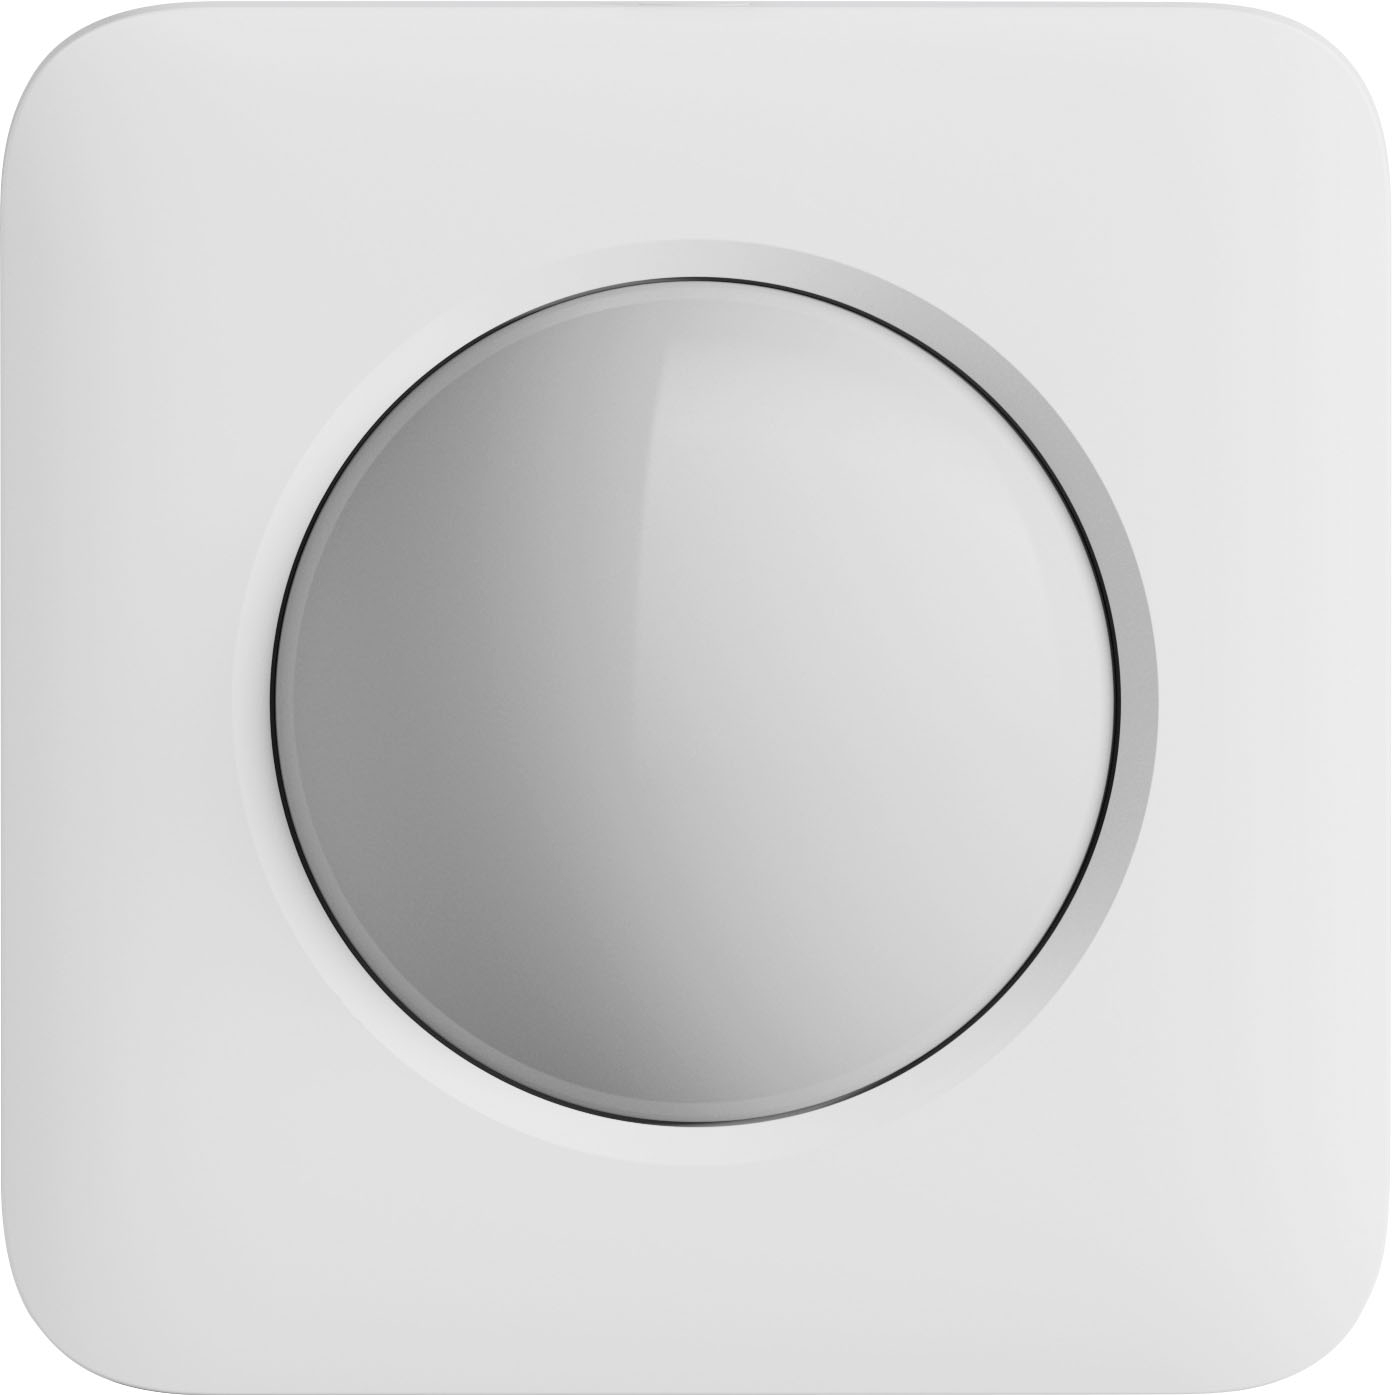 Ring Alarm Outdoor Contact Sensor Gray B0923BK77S - Best Buy